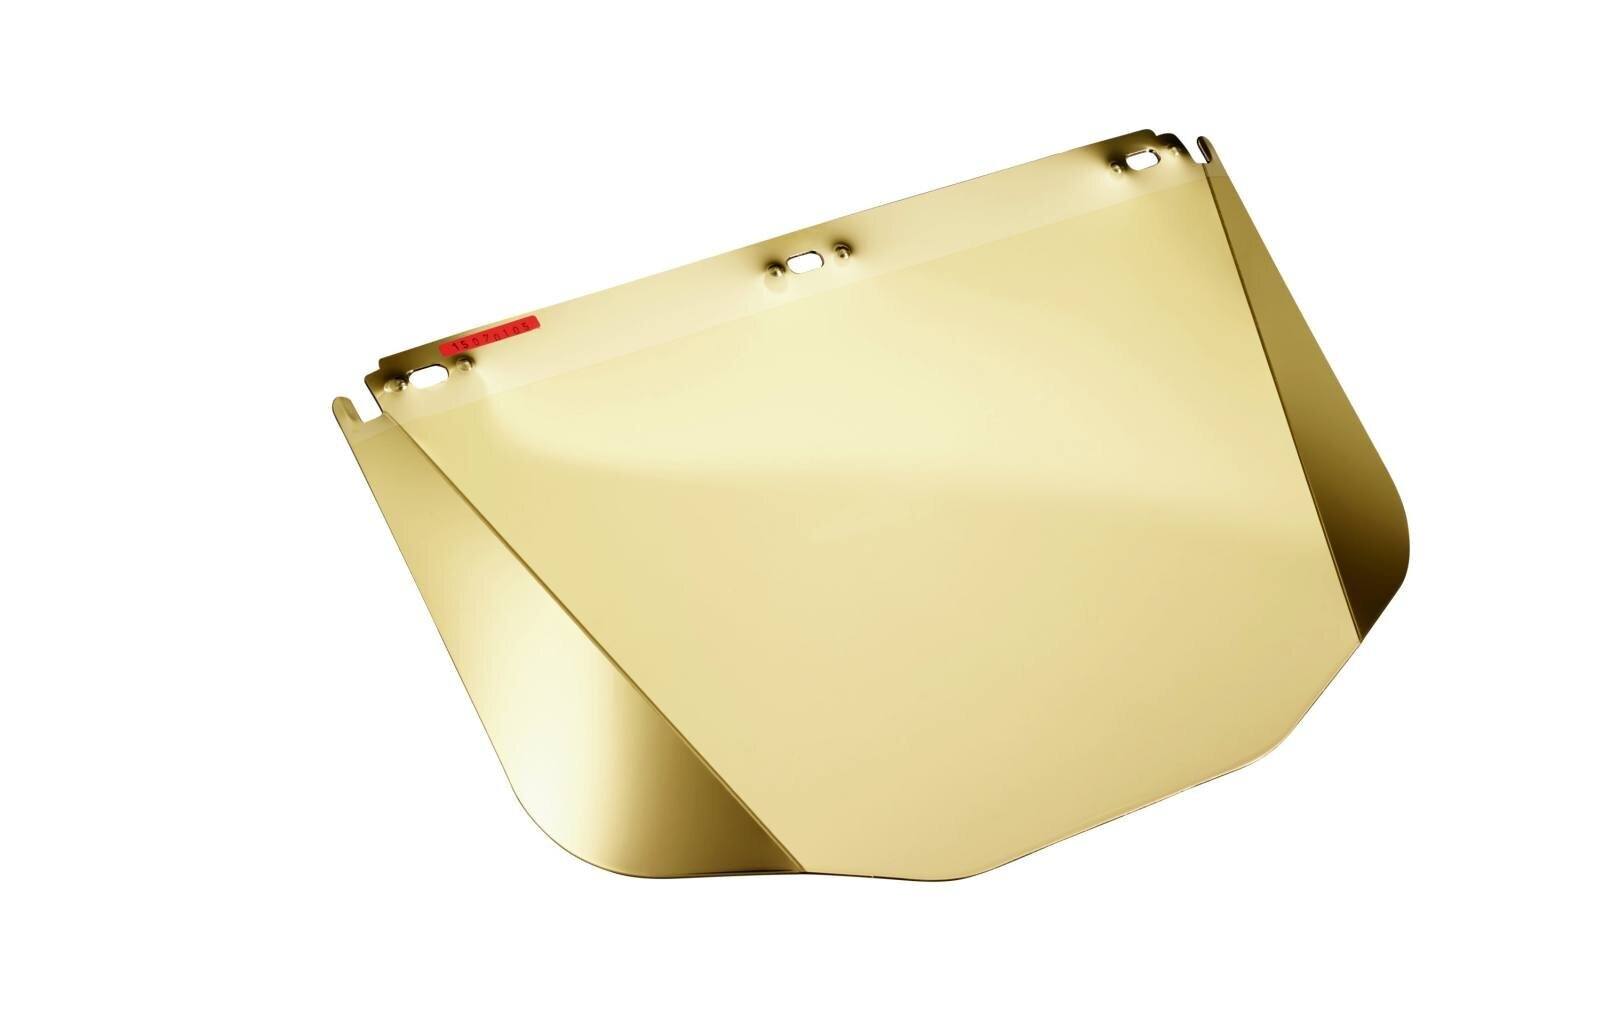 3M 5XG-IR5 Polycarbonat Visier, gold hartbeschichtet IR 5.0 Dicke: 1mm, Gewicht: 90g separat erhältlich: Halterung V5 für 3M Schutzhelme